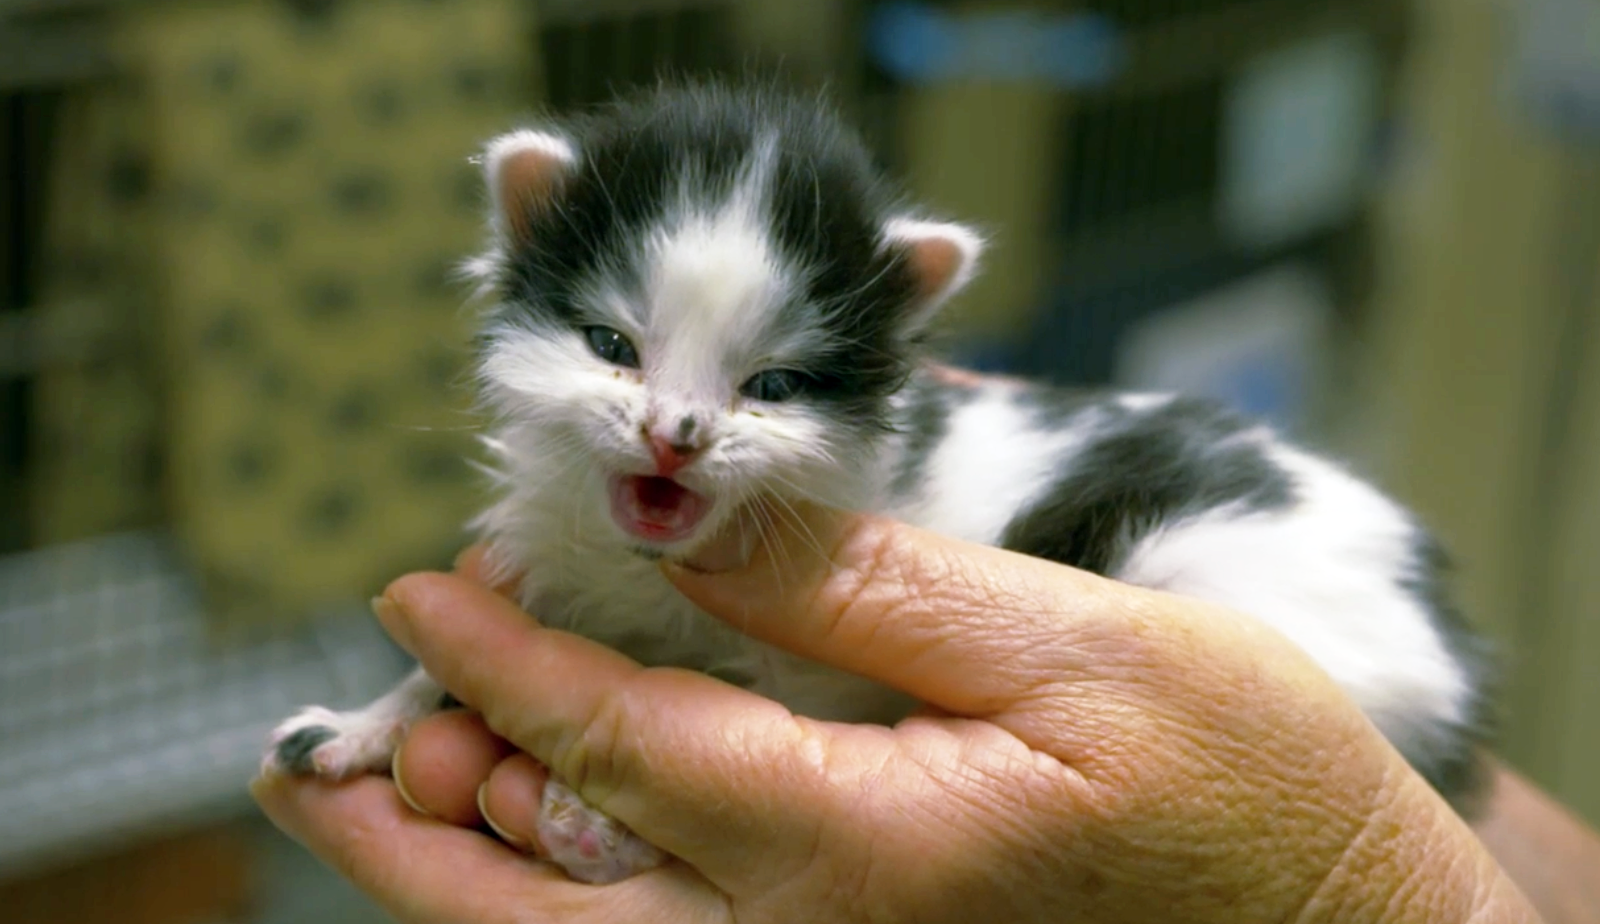 Tiny kitten in open hands